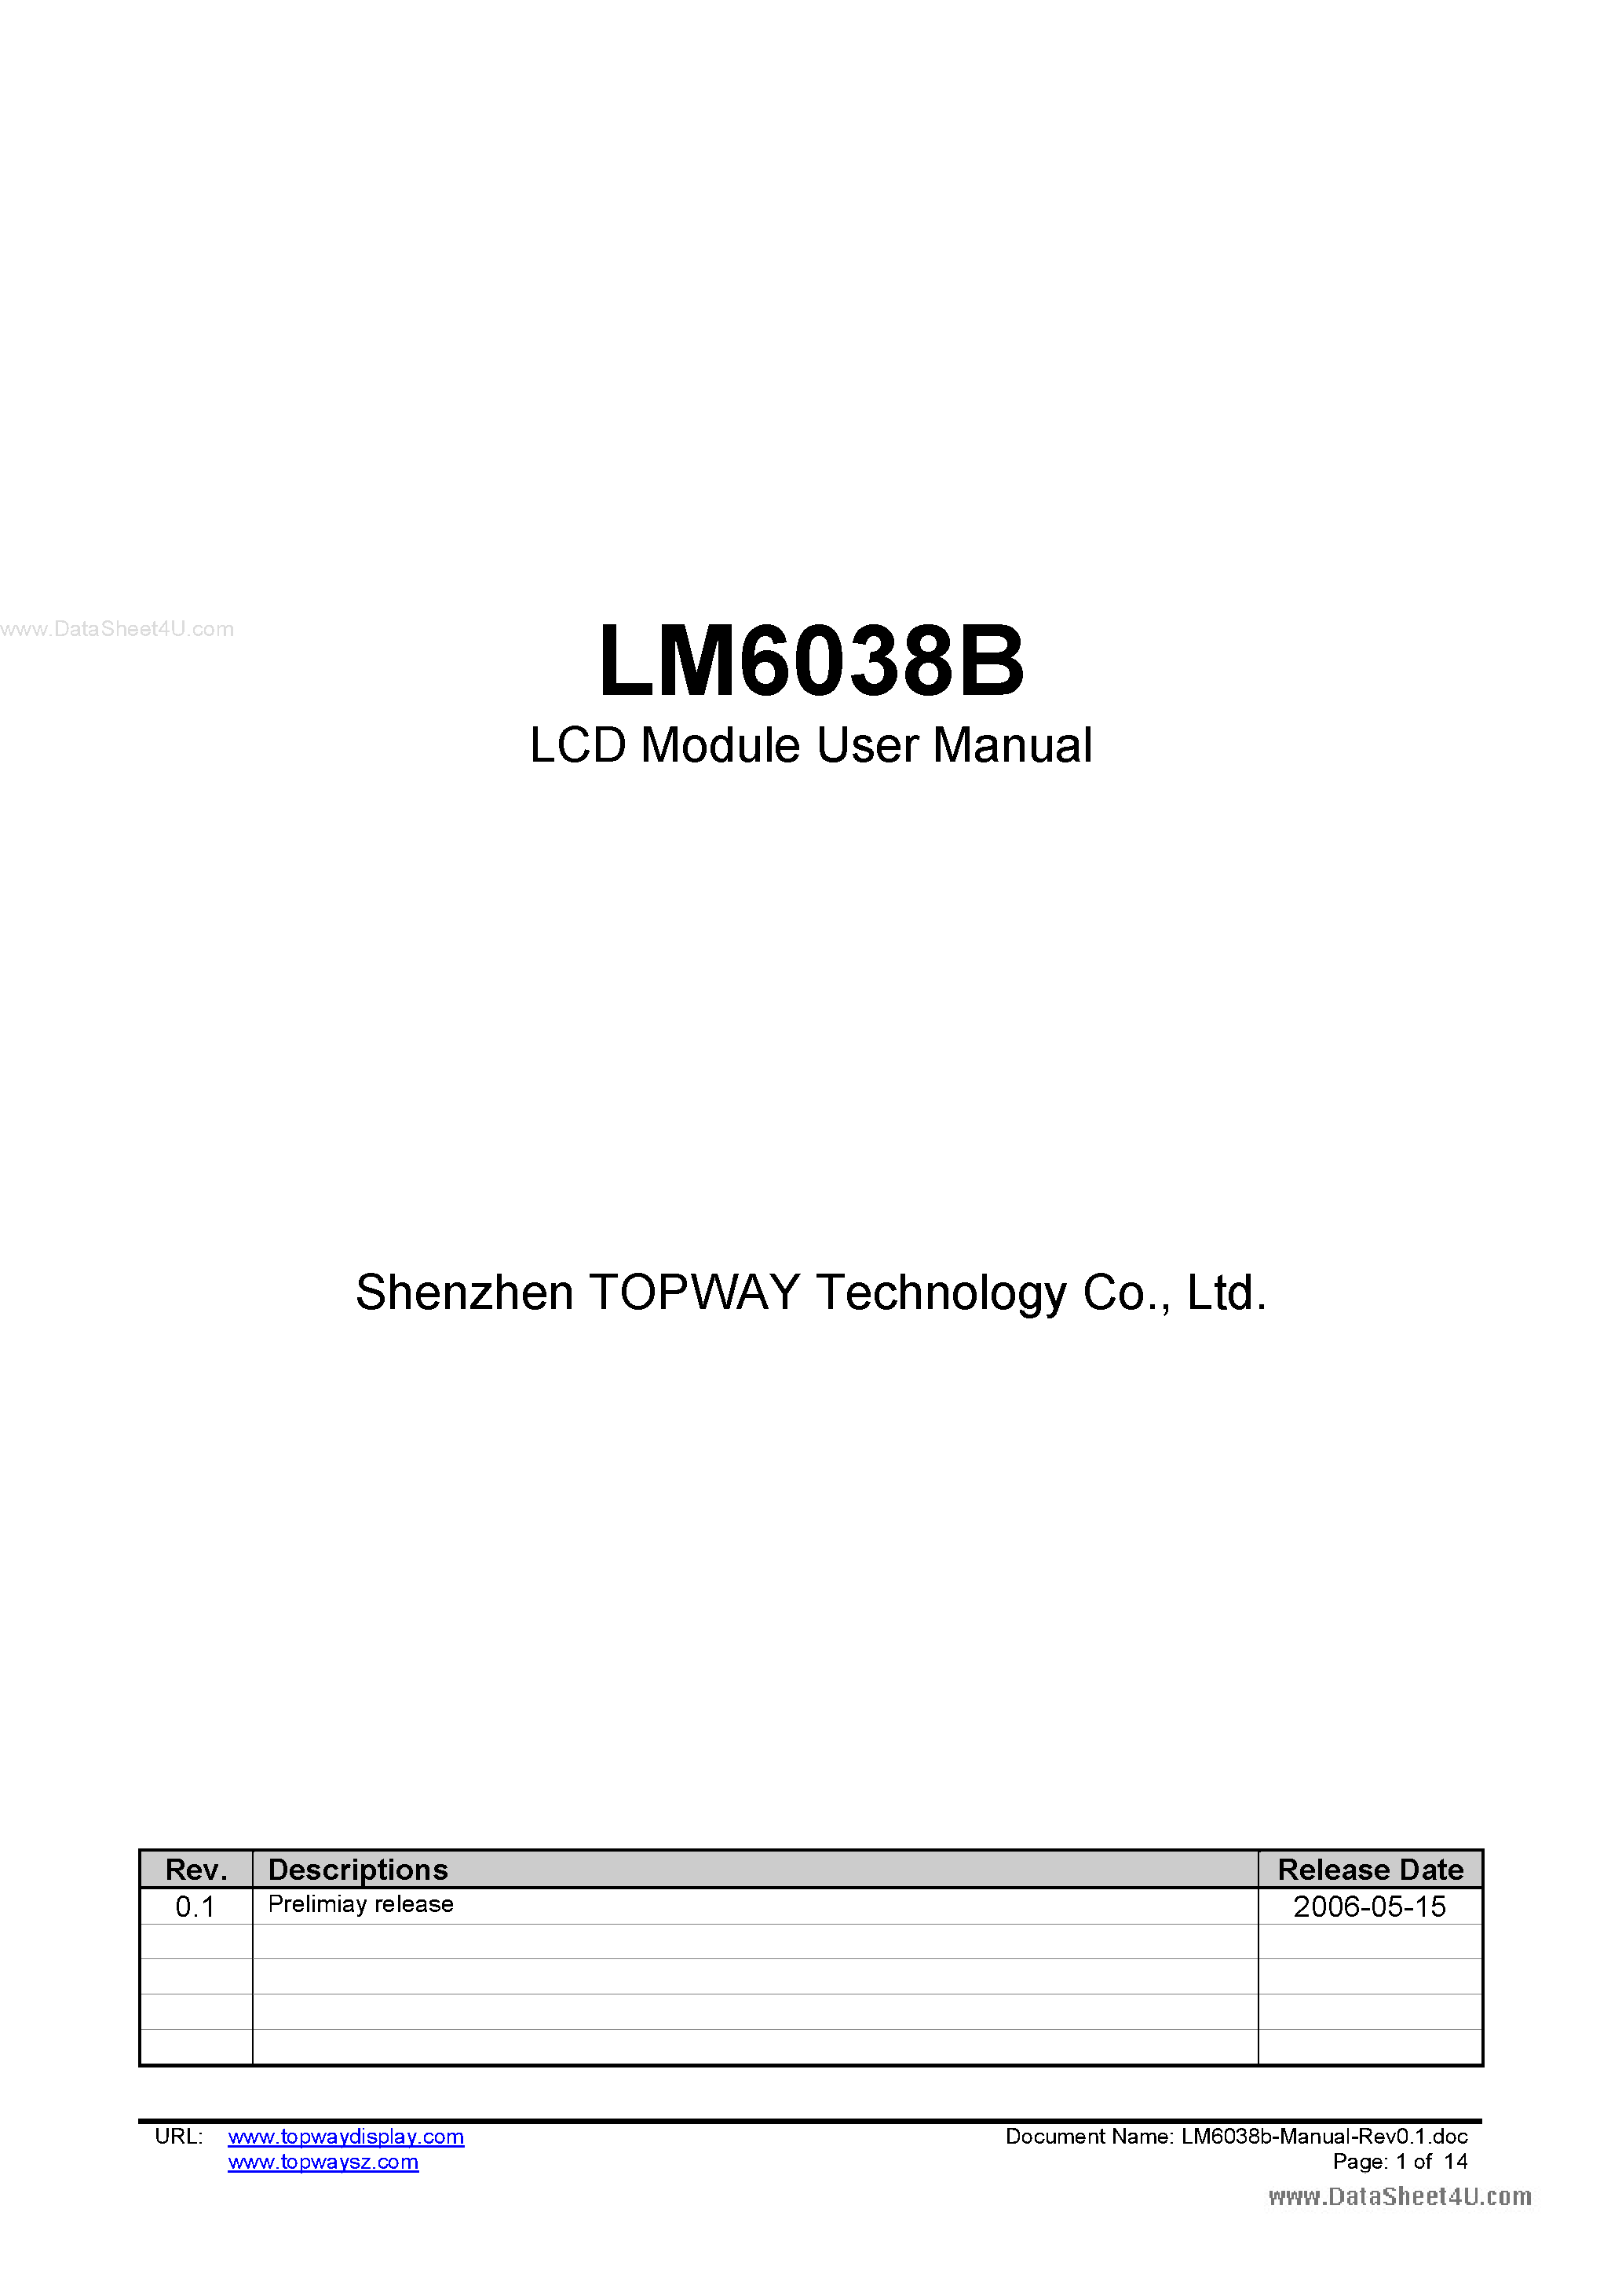 Даташит LM6038B - LCD Module страница 1